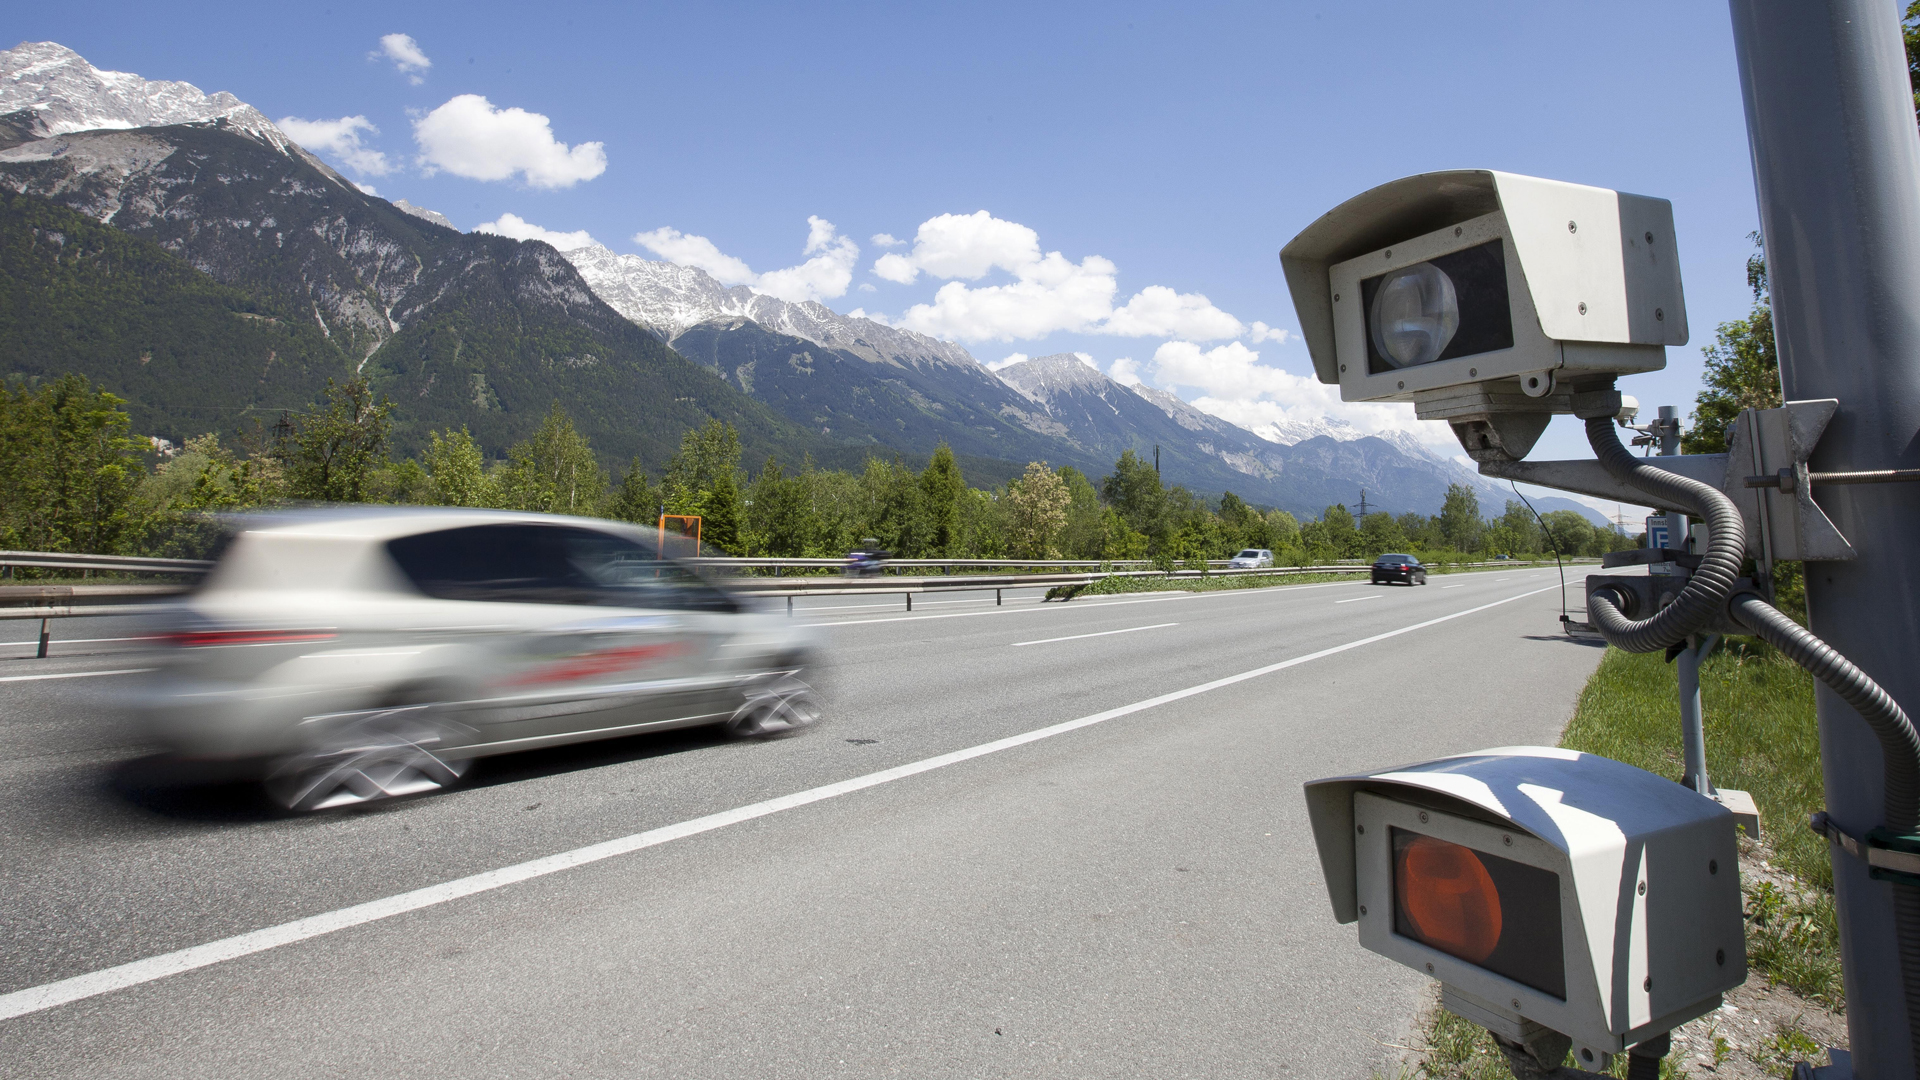 Österreich will extremen Rasern das Auto wegnehmen